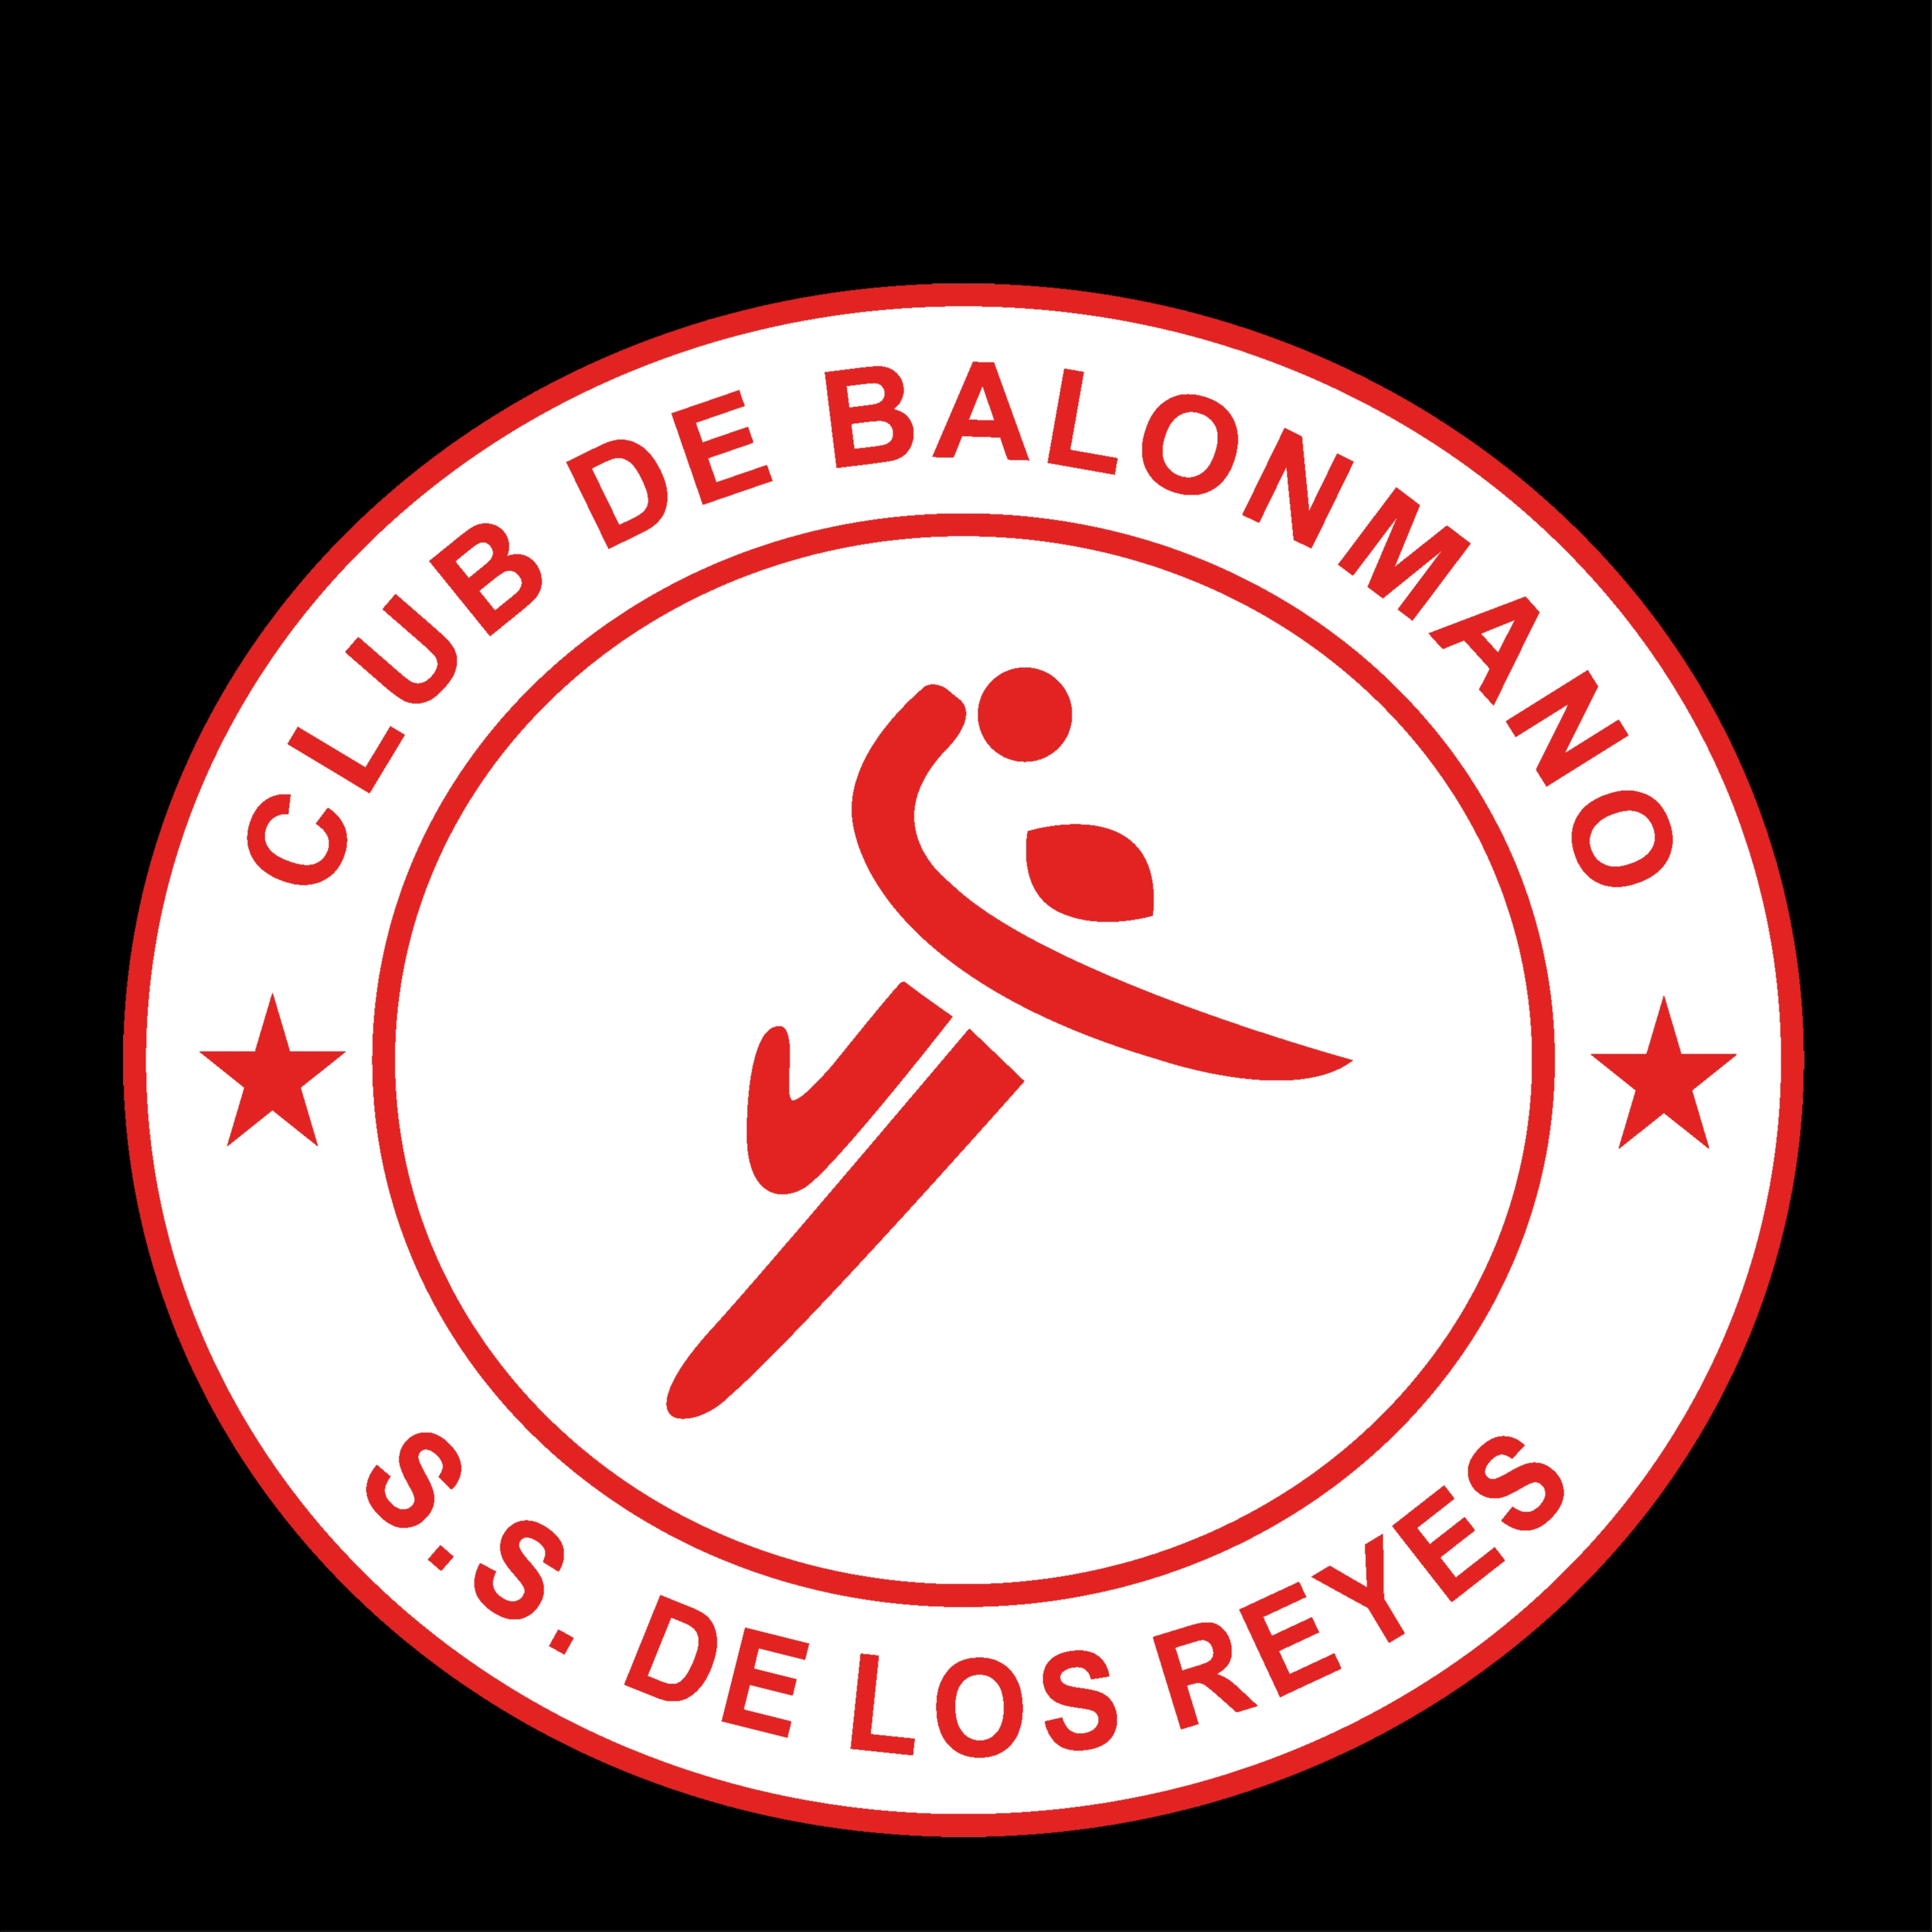 CLUB BALONMANO SAN SEBASTIAN DE LOS REYES